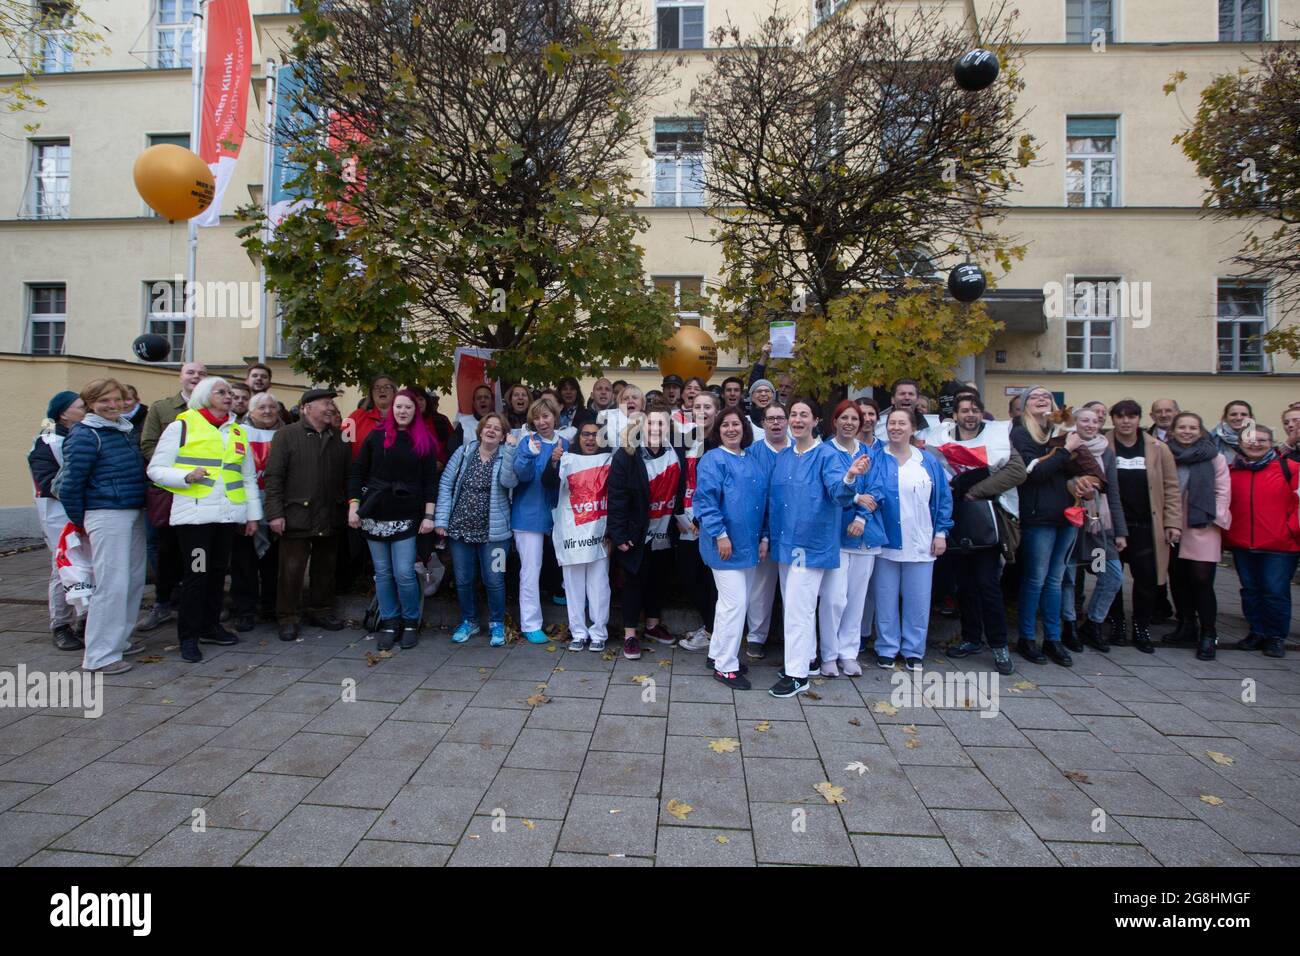 Verdi-Mitglieder haben am 7.11.2019 vor der München Klinik ( MüK ) für eine München-Zulage von 270 Euro protestiert. (Photo by Alexander Pohl/Sipa USA) Credit: Sipa USA/Alamy Live News Stock Photo